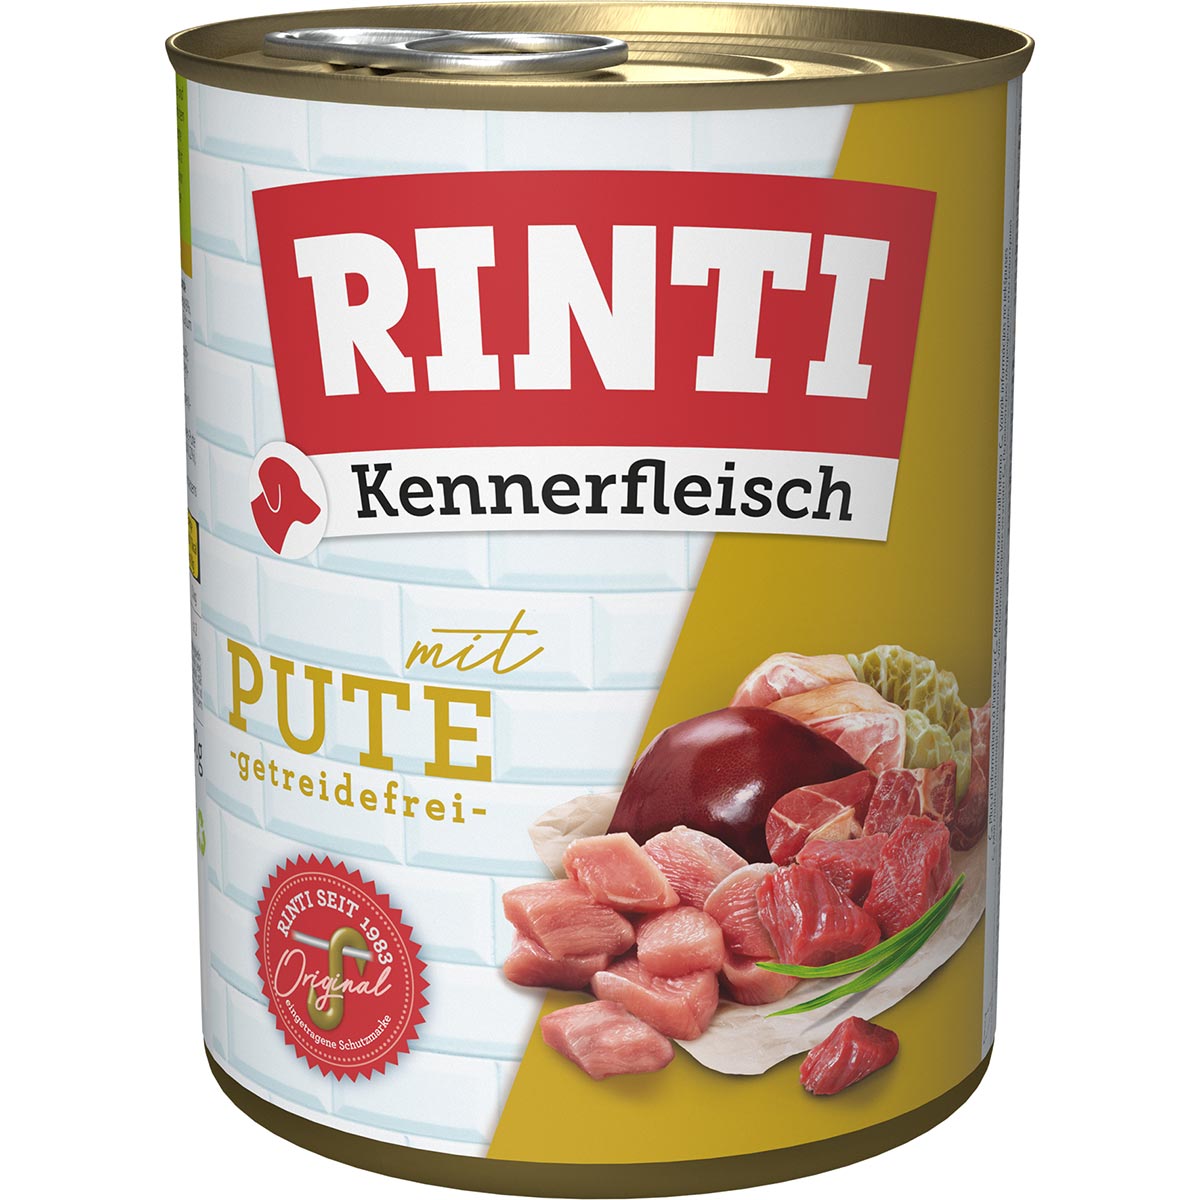 Rinti Kennerfleisch Pute 12x800g von Rinti